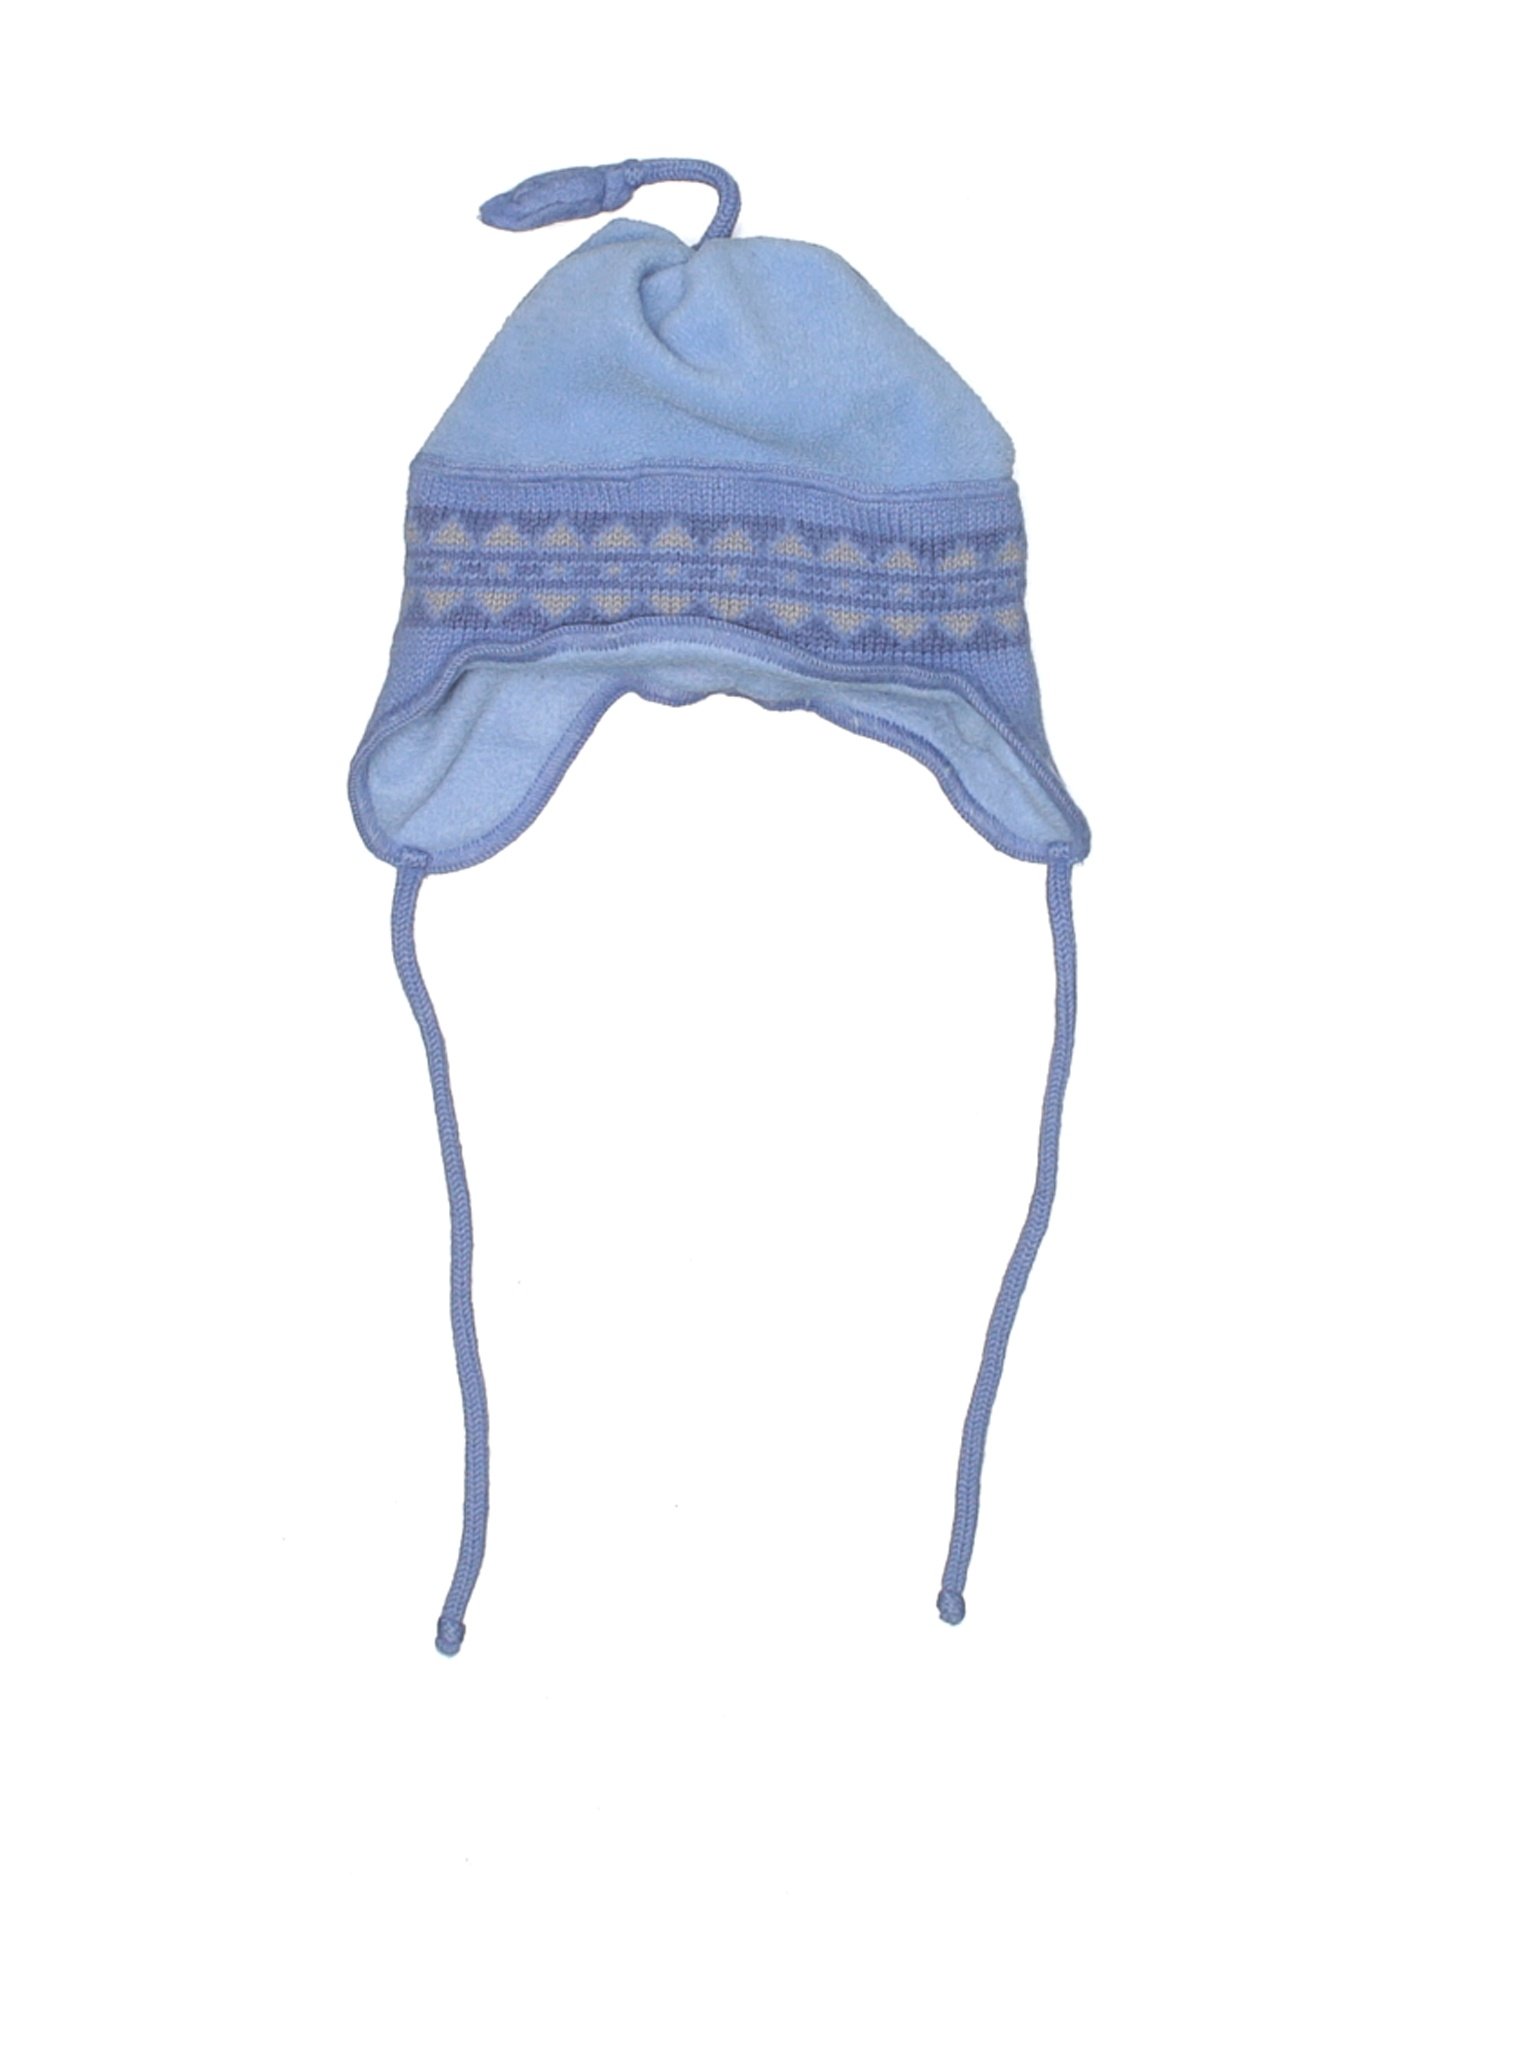 Columbia Women Blue Winter Hat One Size | eBay